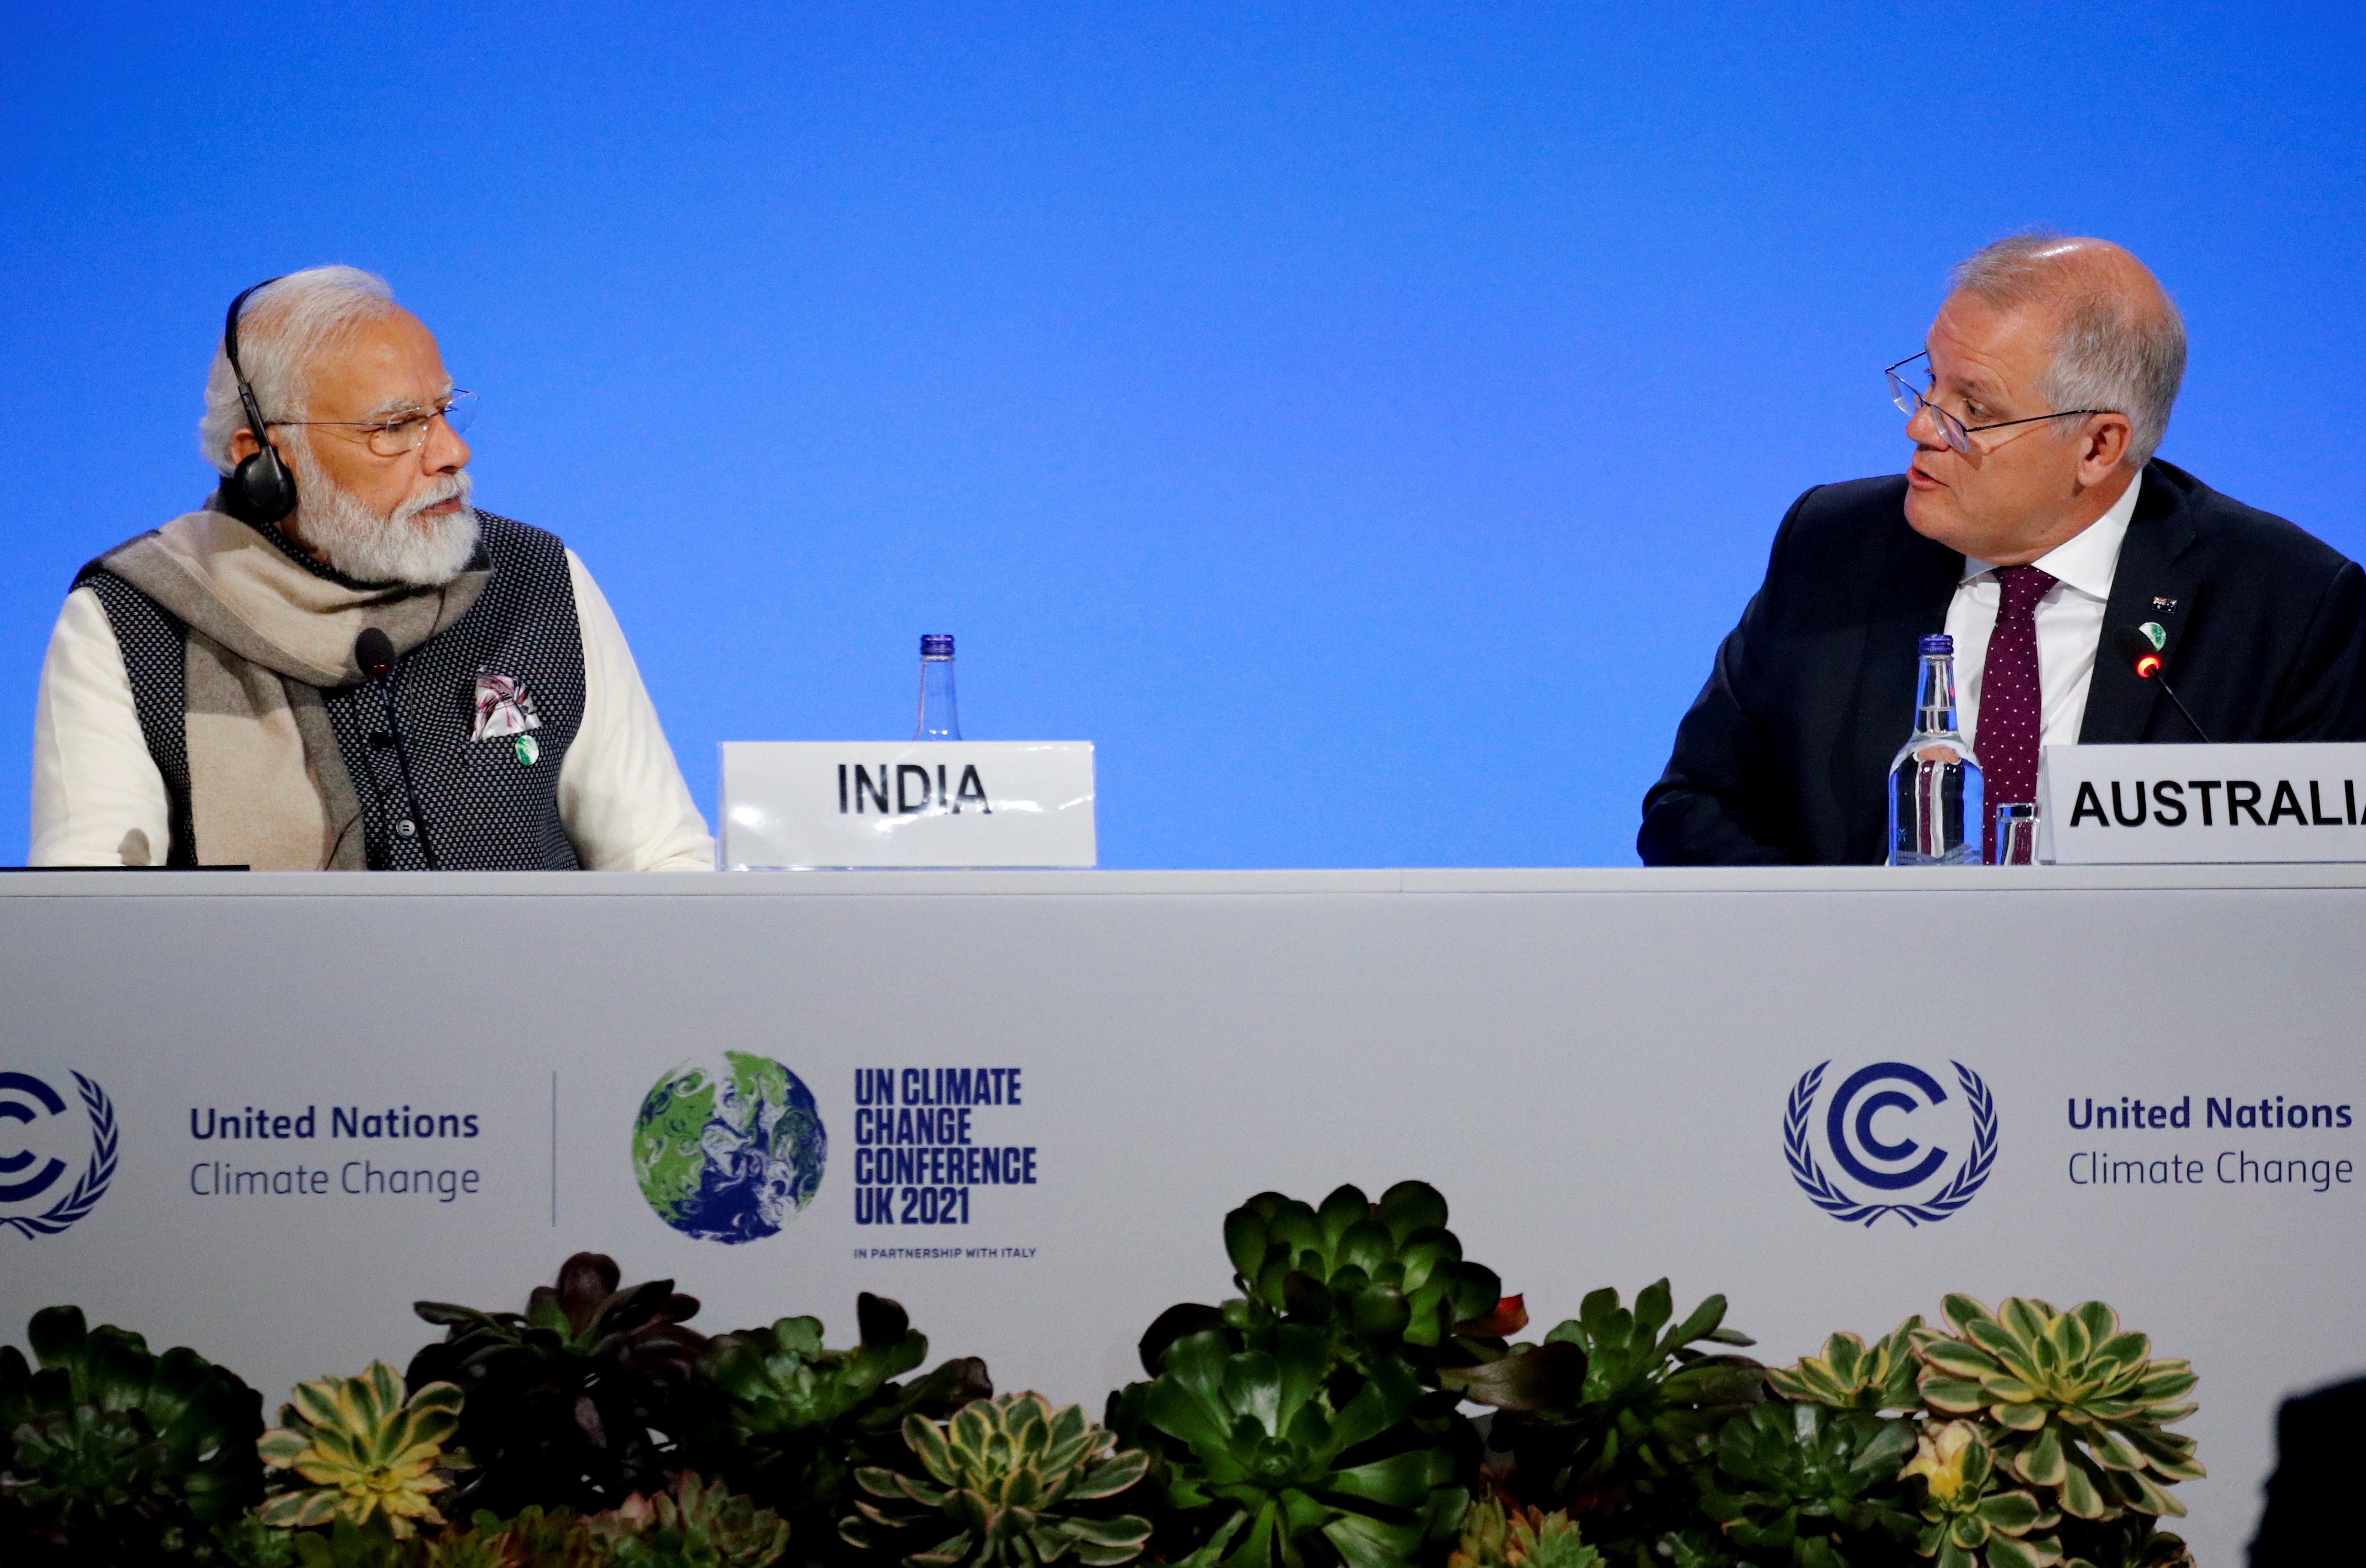 El primer ministro de la India, Narendra Modi, y el primer ministro de Australia, Scott Morrison, asisten a una reunión durante la Conferencia de la ONU sobre el Cambio Climático (COP26) en Glasgow, Escocia, Gran Bretaña, el 2 de noviembre de 2021. REUTERS/Phil Noble/Pool